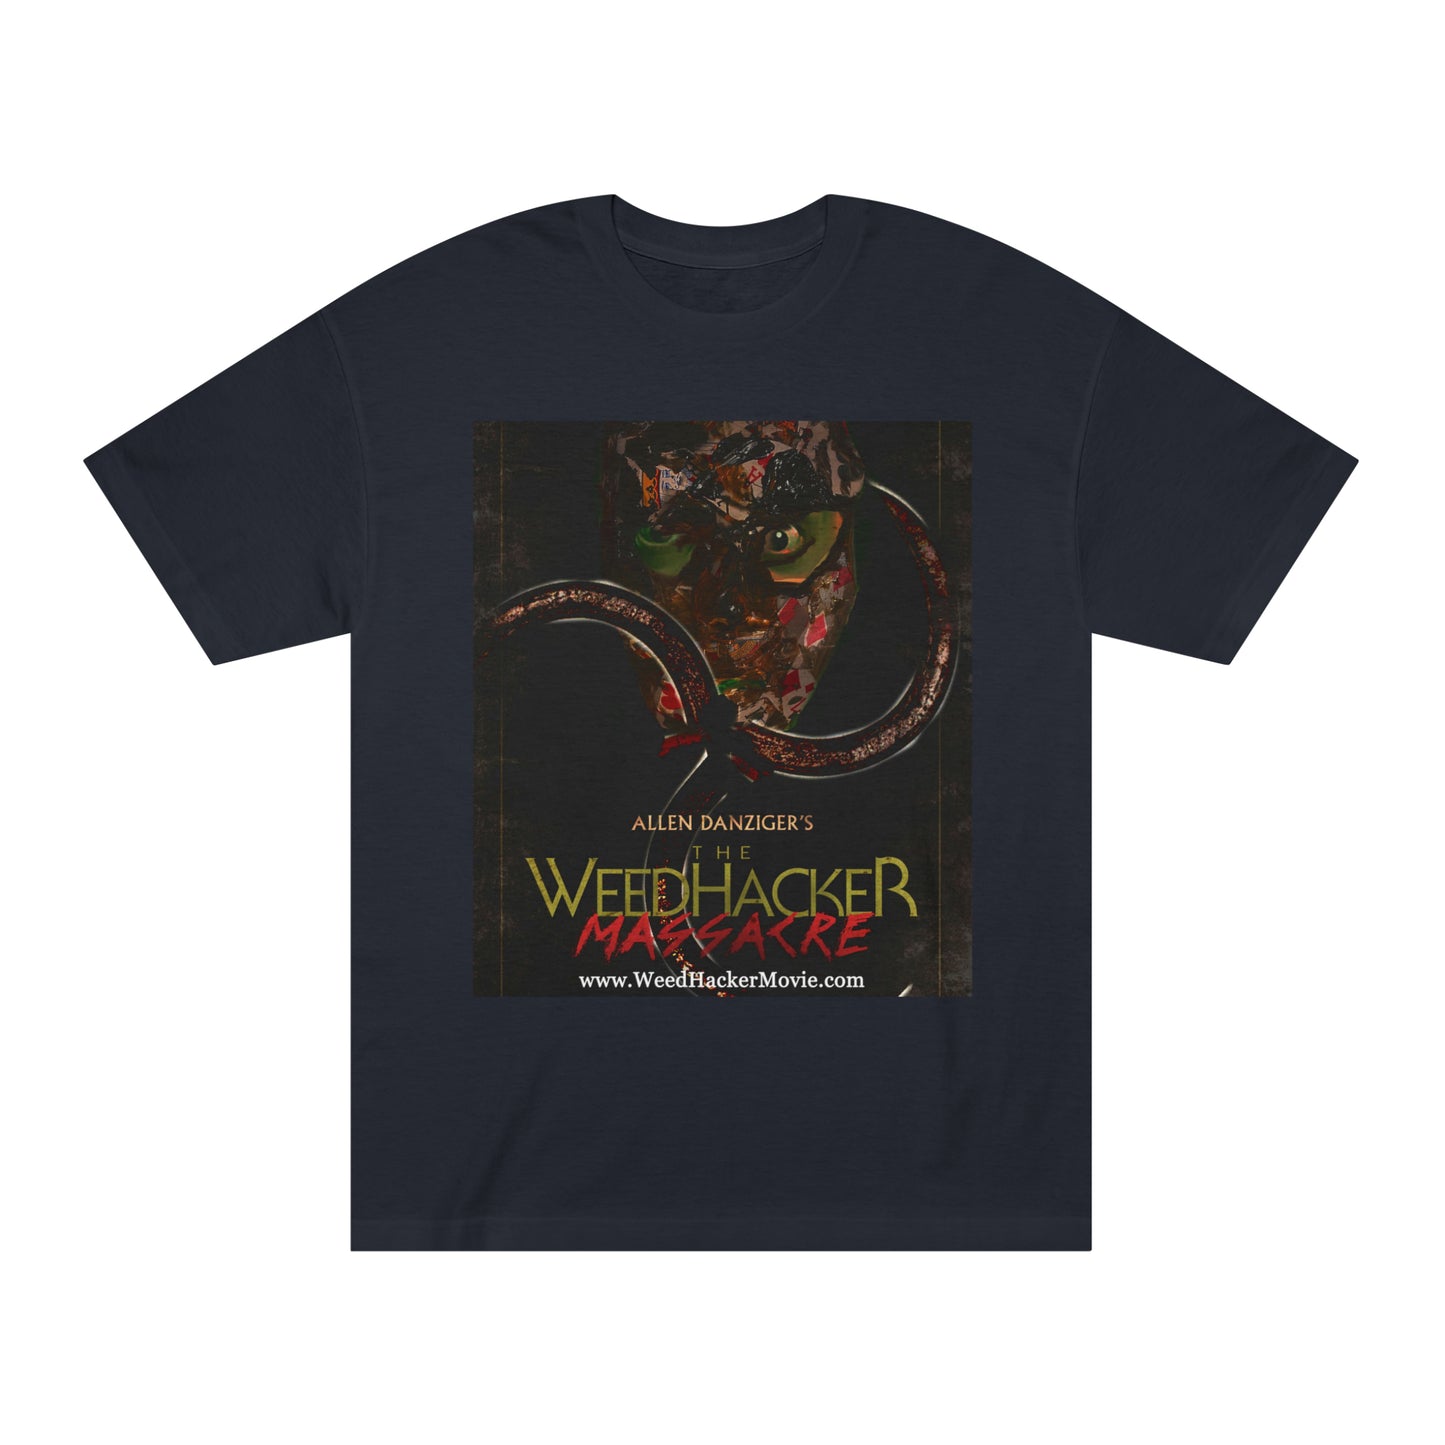 The WeedHacker Massacre T-Shirt